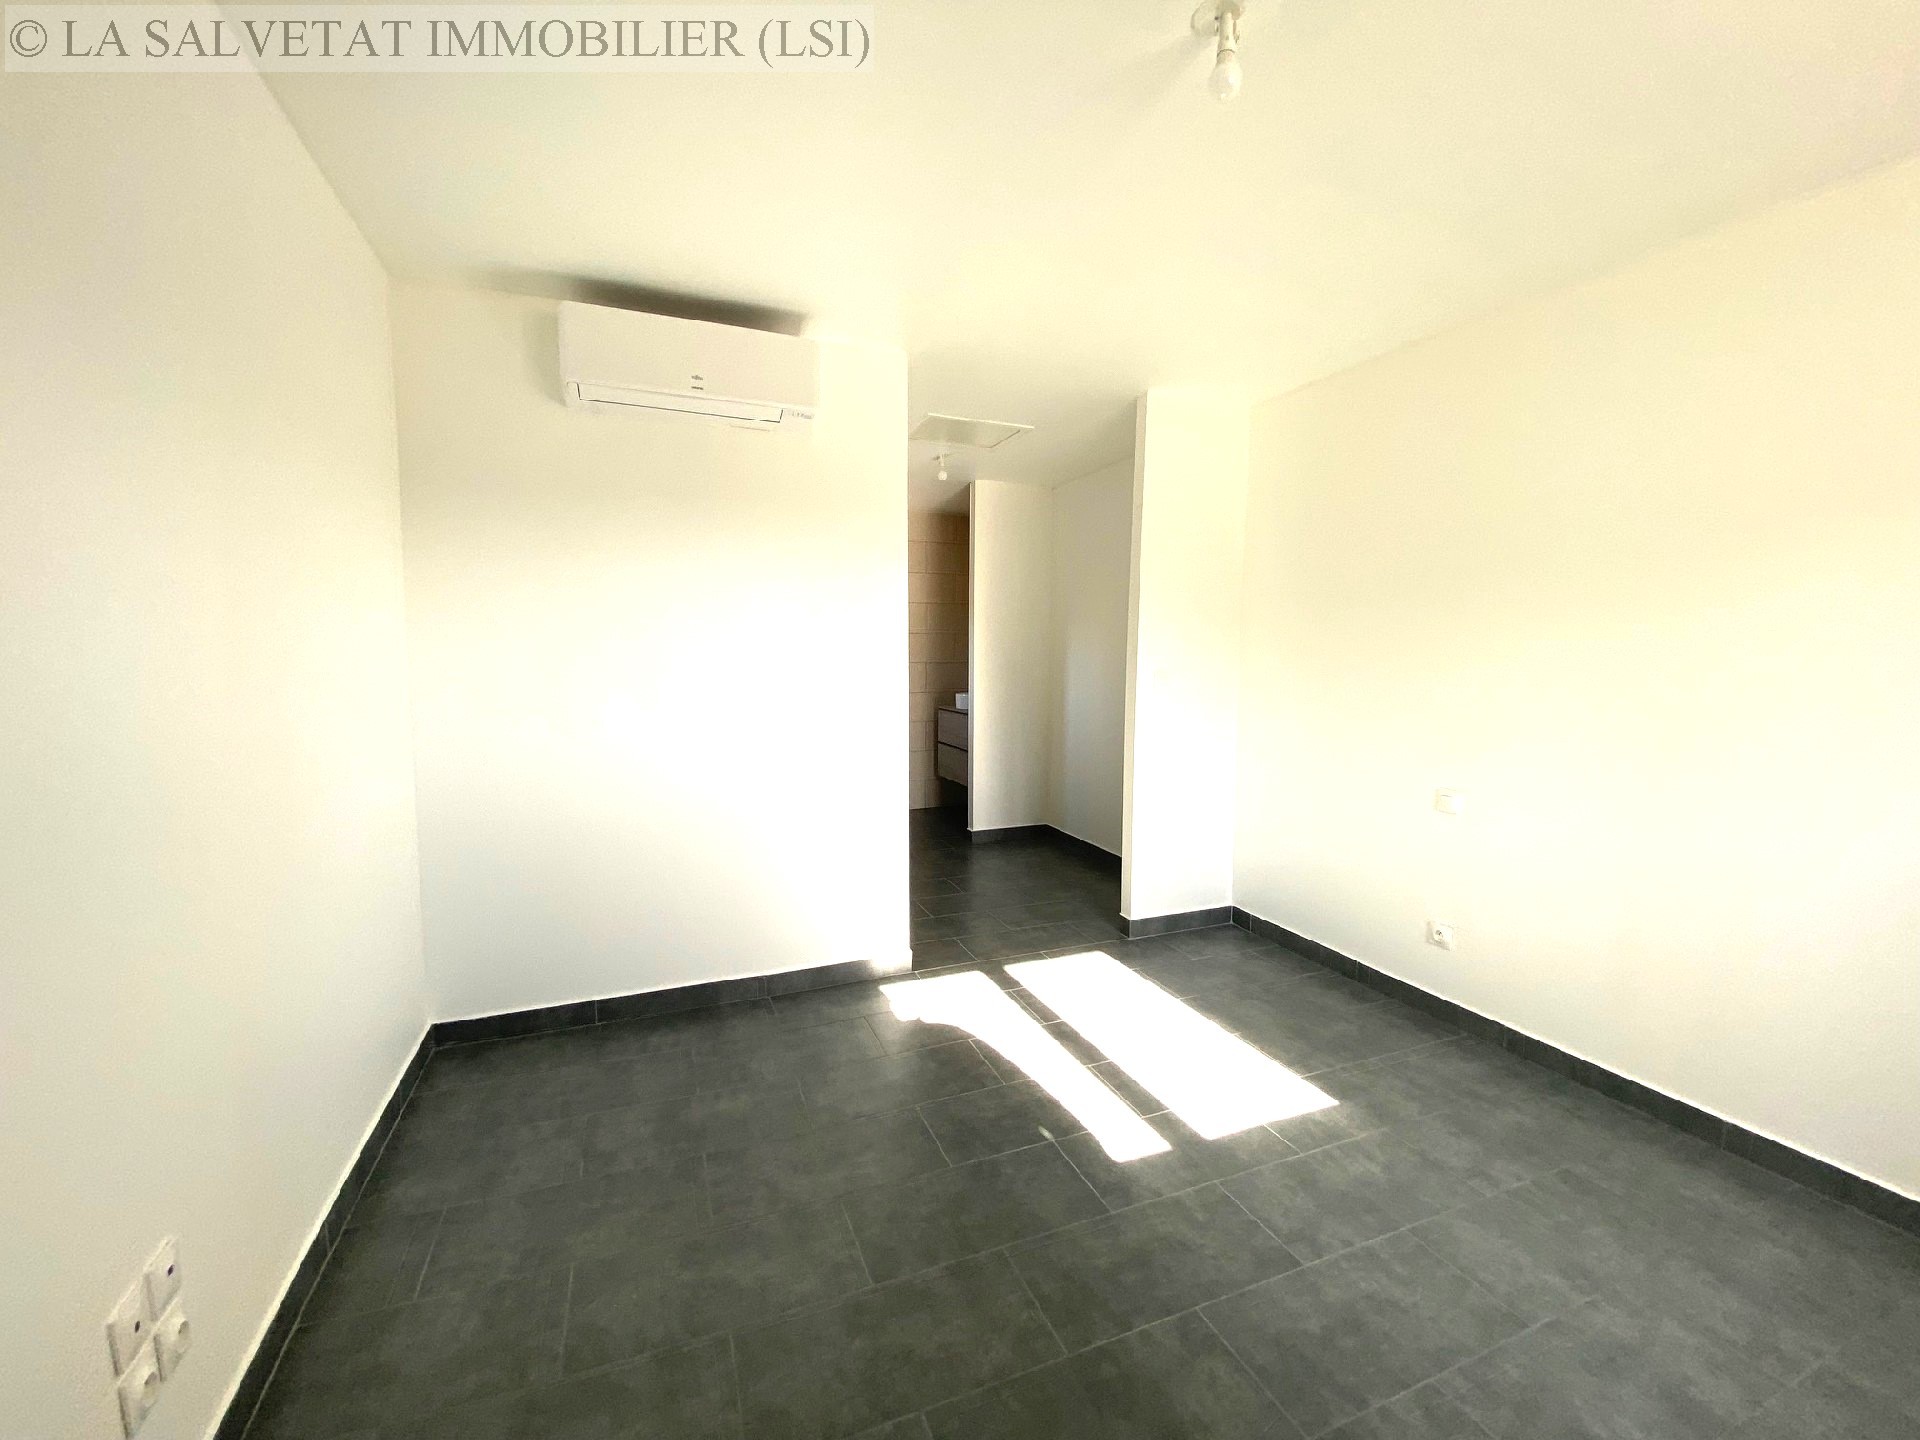 Vente maison-villa - ST LYS<br>114 m², 5 pièces